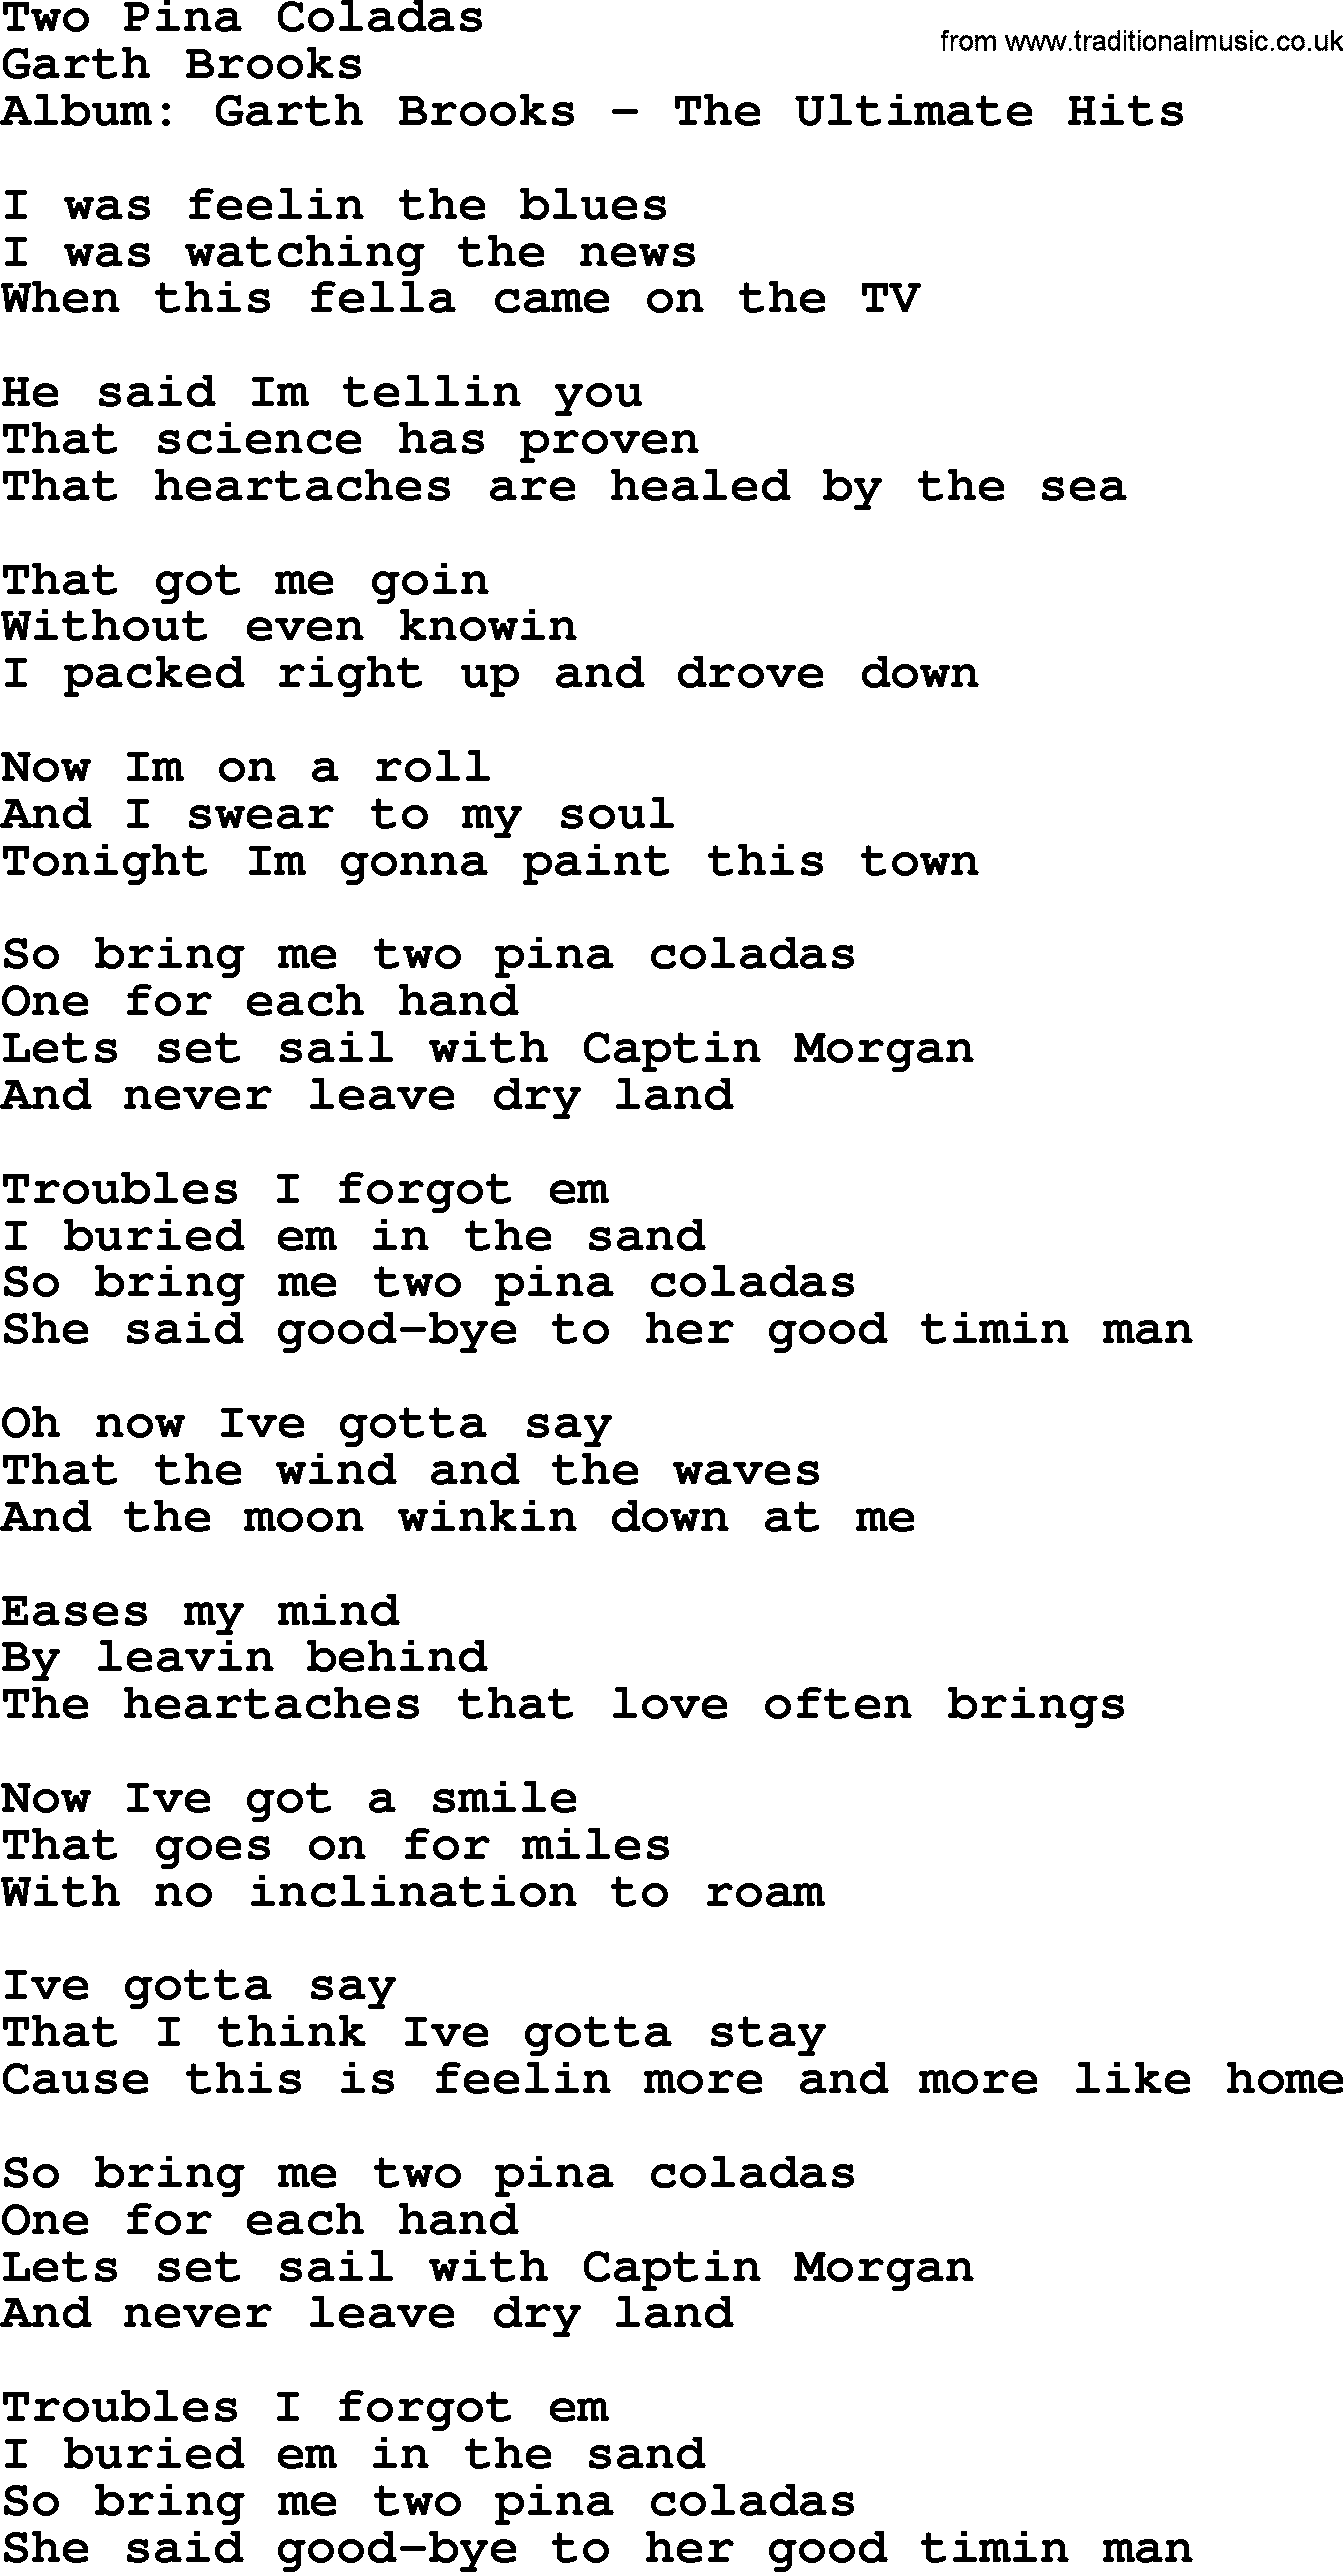 Garth Brooks song: Two Pina Colladas, lyrics